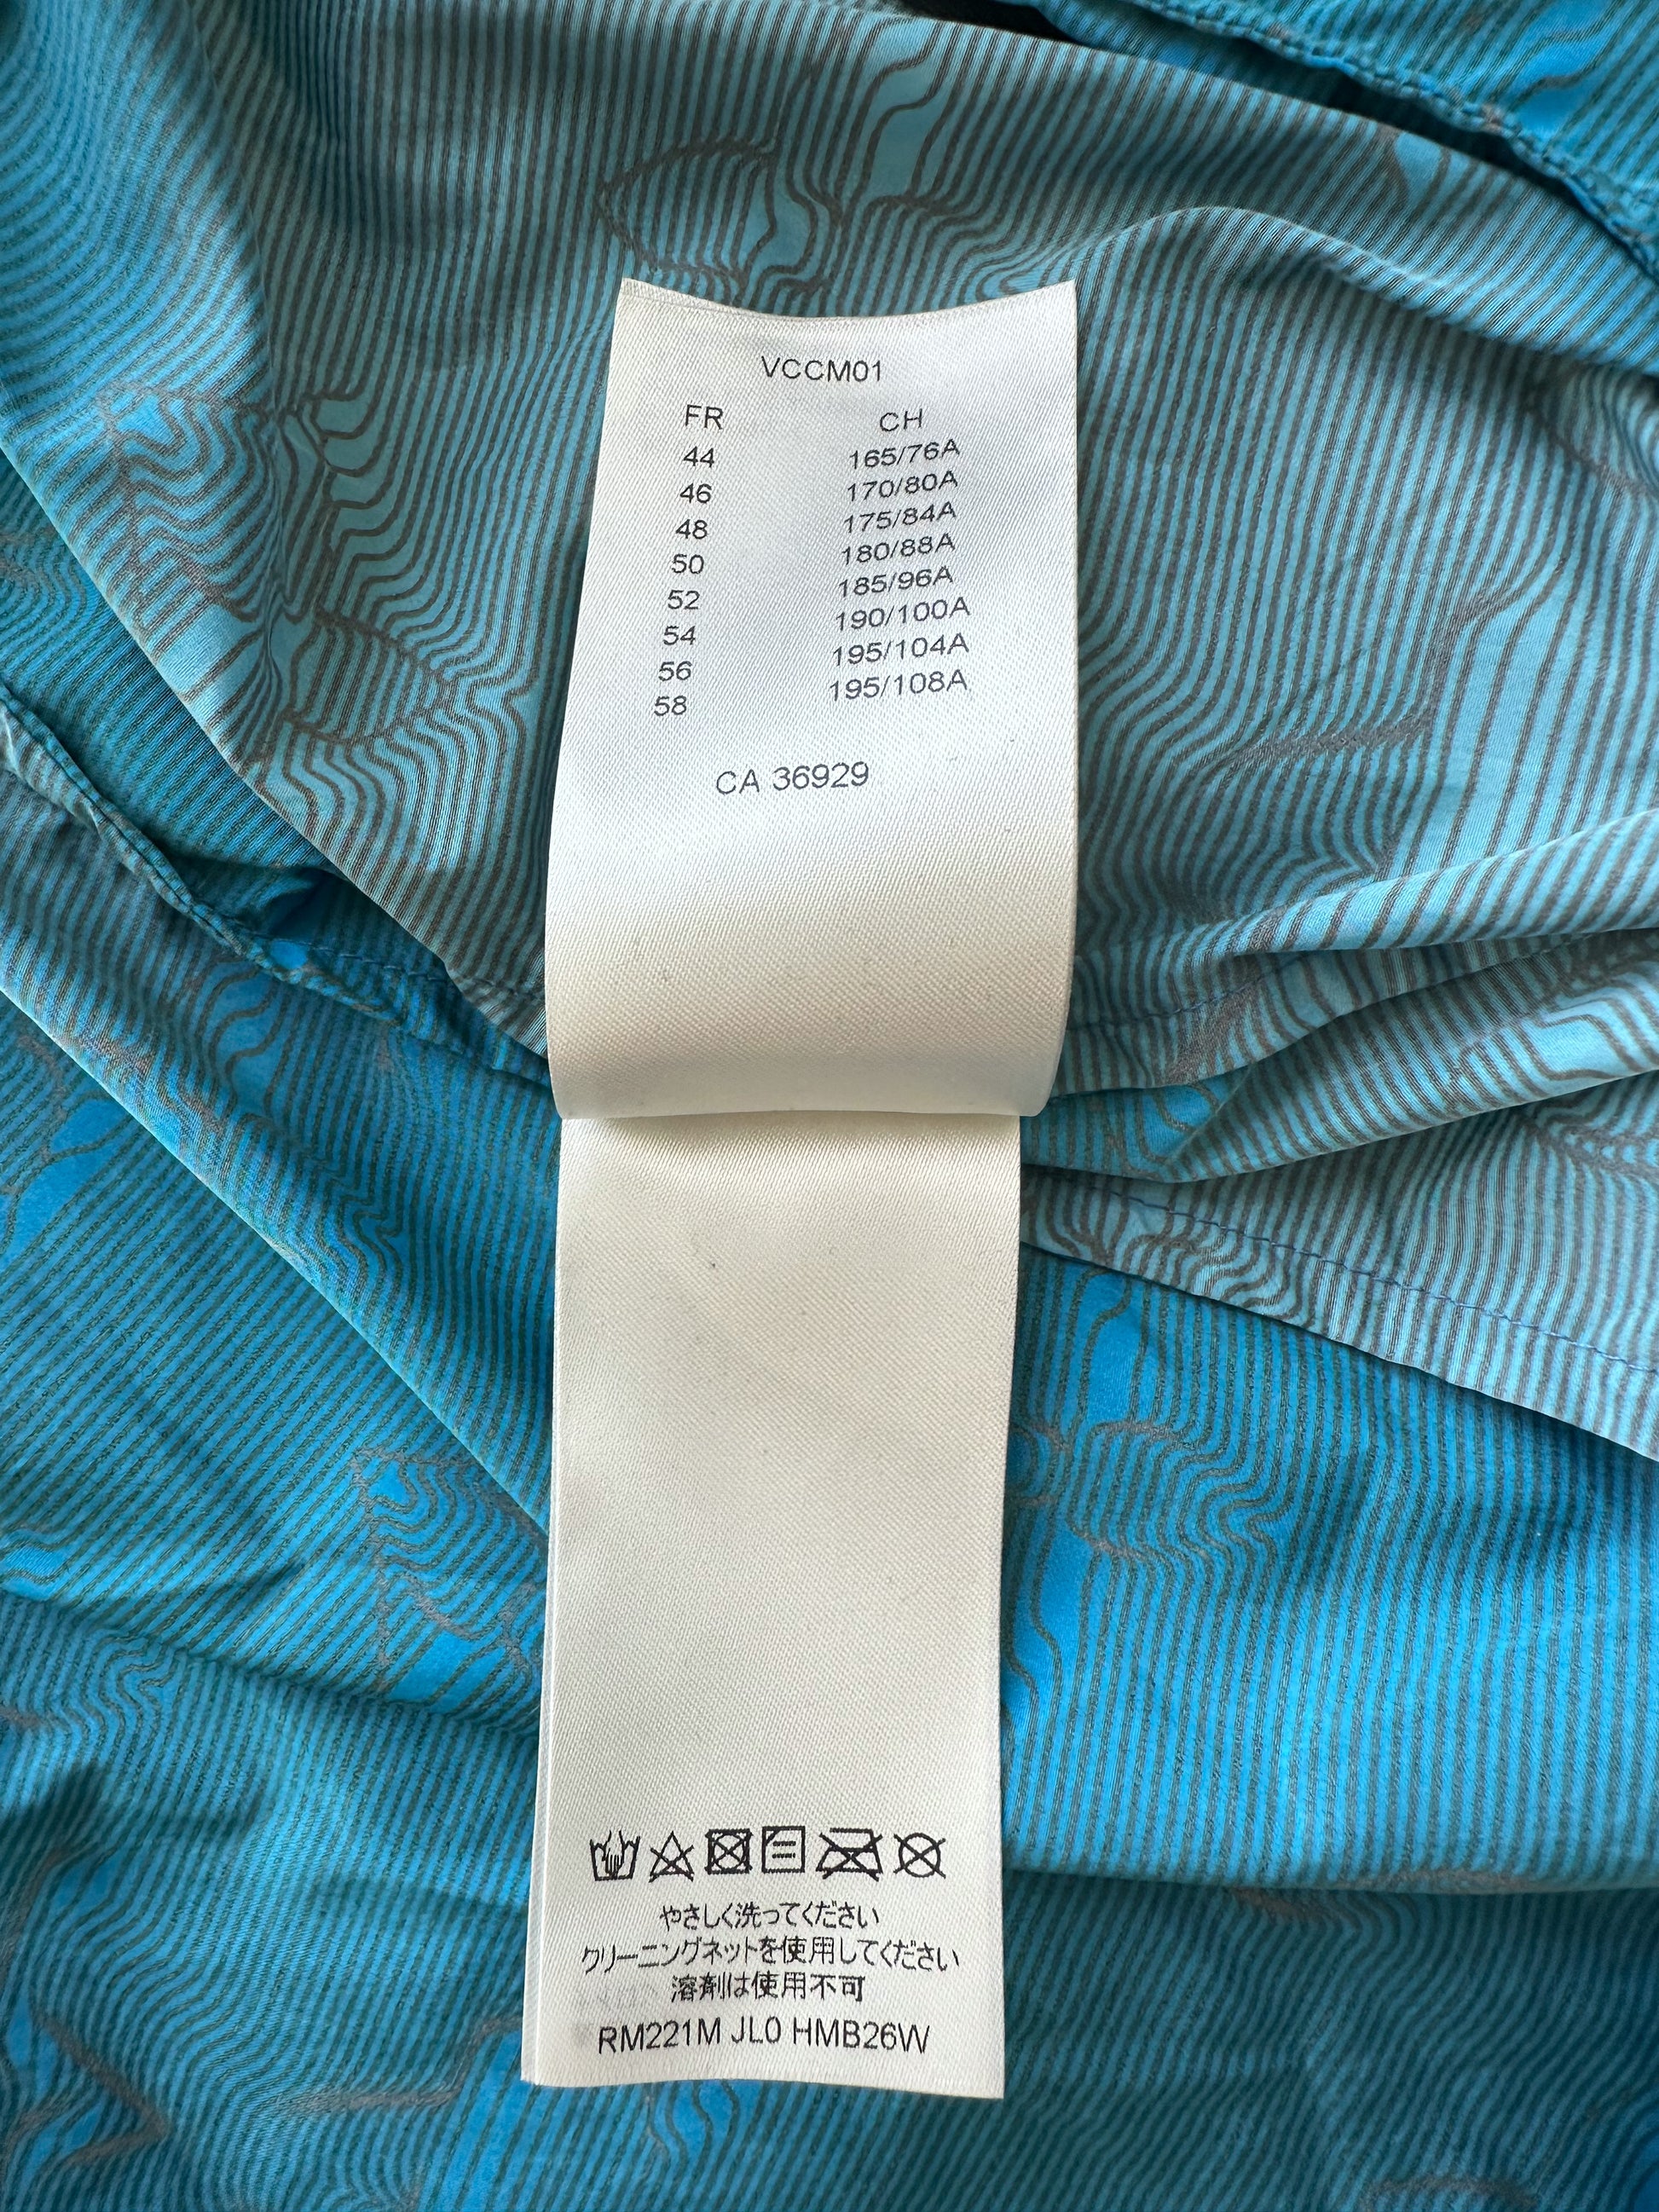 Louis Vuitton Blue '2054 Monogram' Windbreaker Jacket